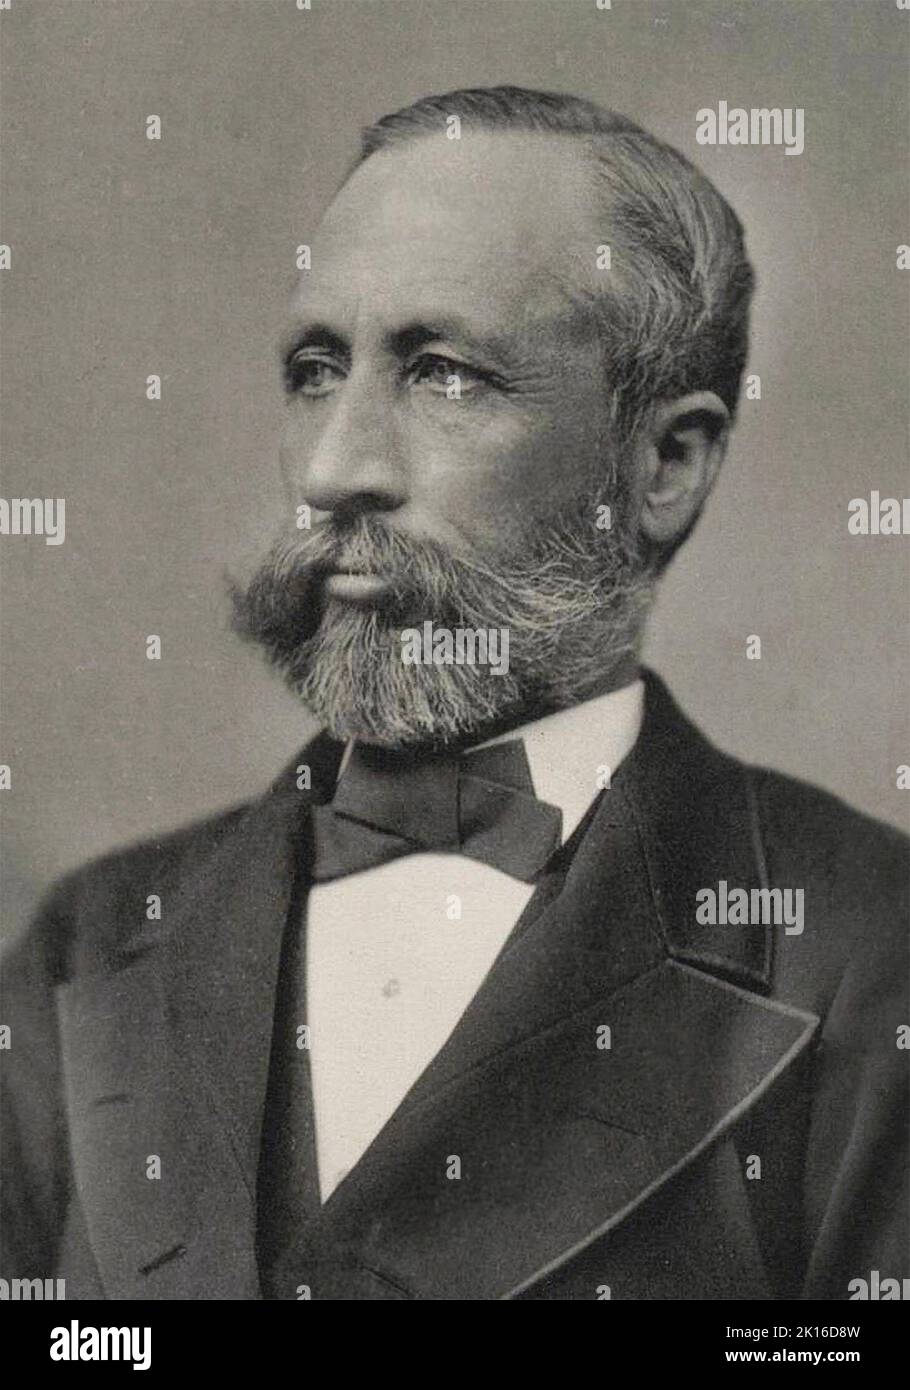 Porträt von William Smith Clark (1826 – 1886), einem amerikanischen Professor für Chemie, Botanik und Zoologie, einem Oberst während des amerikanischen Bürgerkrieges und einem führenden Agrarwissenschaftler. Stockfoto